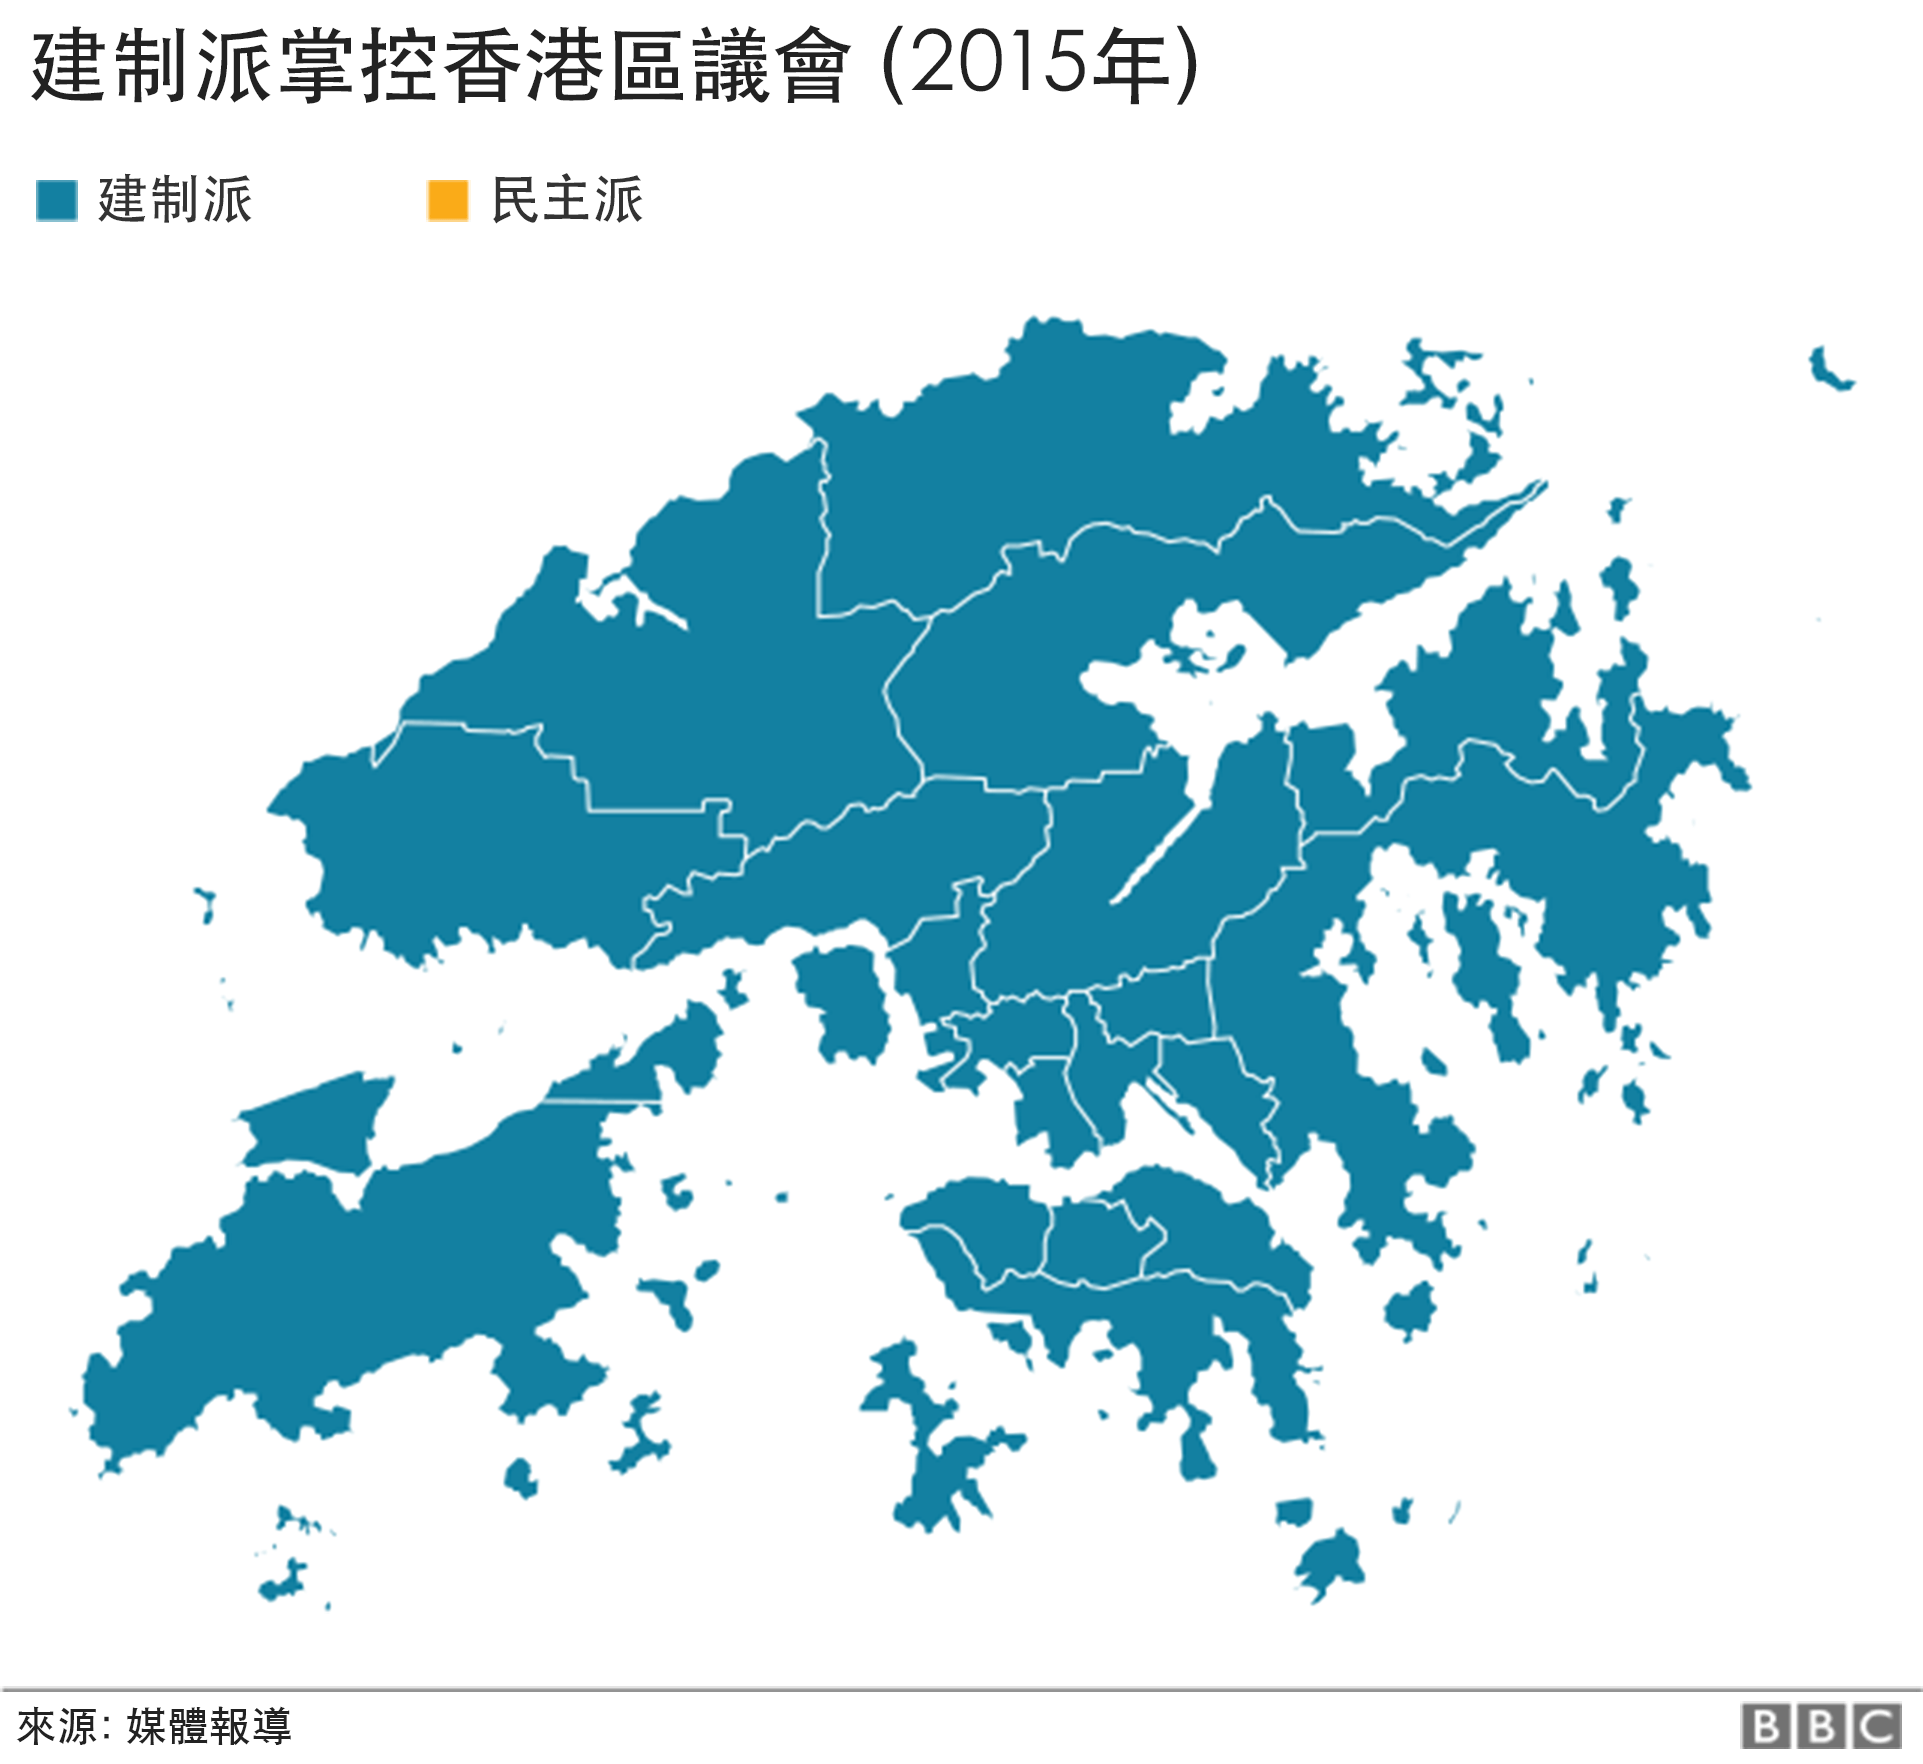 hong kong election results